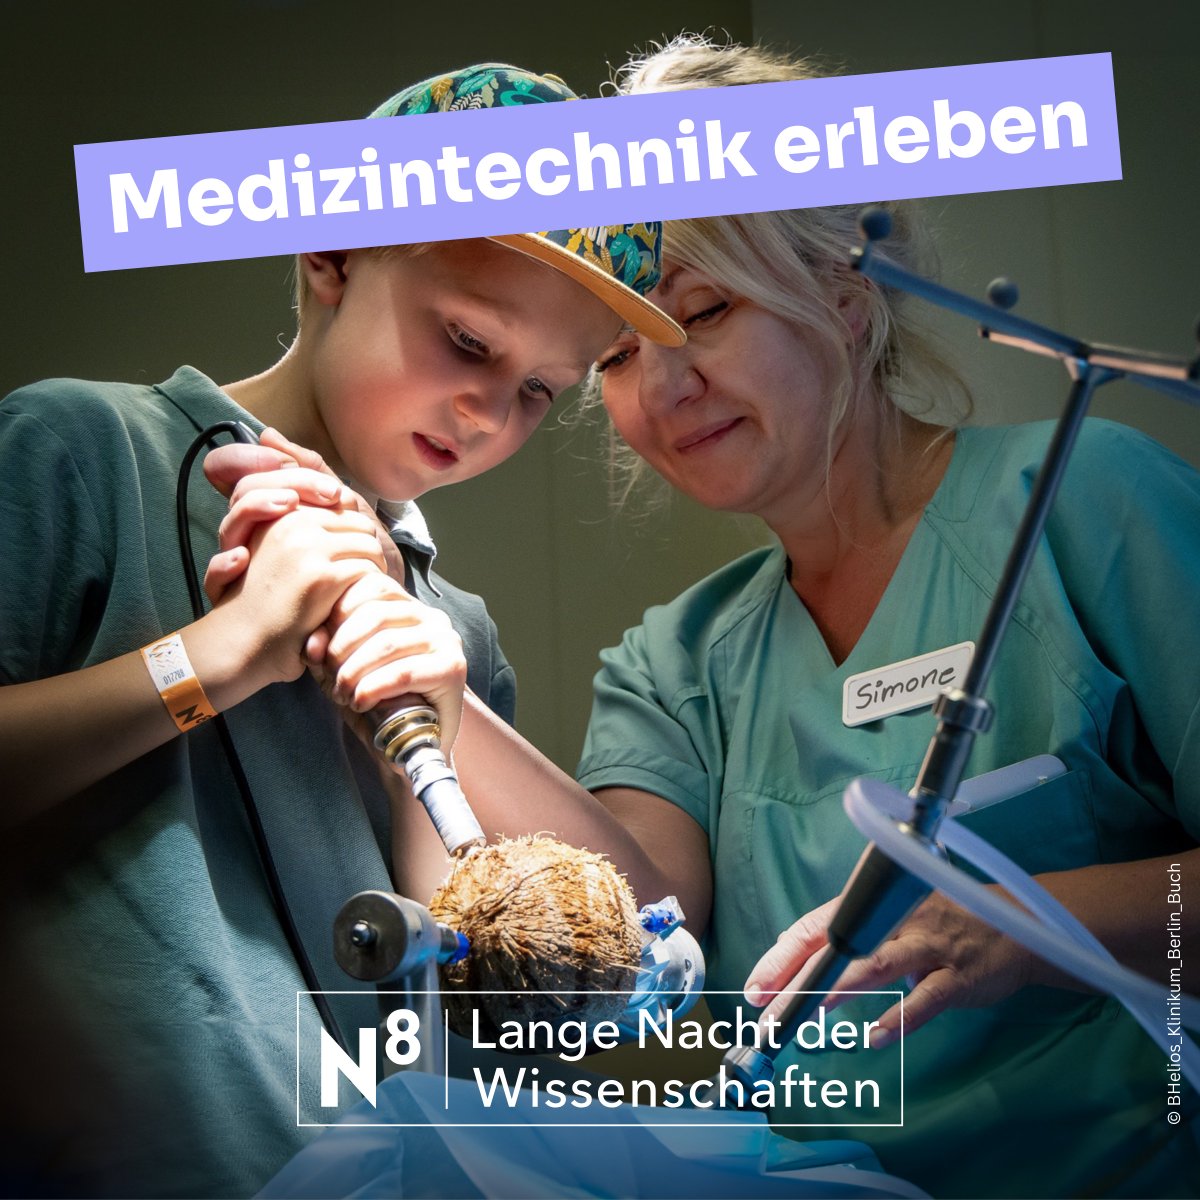 Warum #Wissenschaft? 🤔 Am 22. Juni könnt ihr euch auf der Langen Nacht der Wissenschaften über Innovationen und Forschung auf dem Gebiet der Medizintechnik und den Einsatz von Robotik informieren. 🫀🦿 #LNDW24 #Berlin #Technik #Wissenschaft